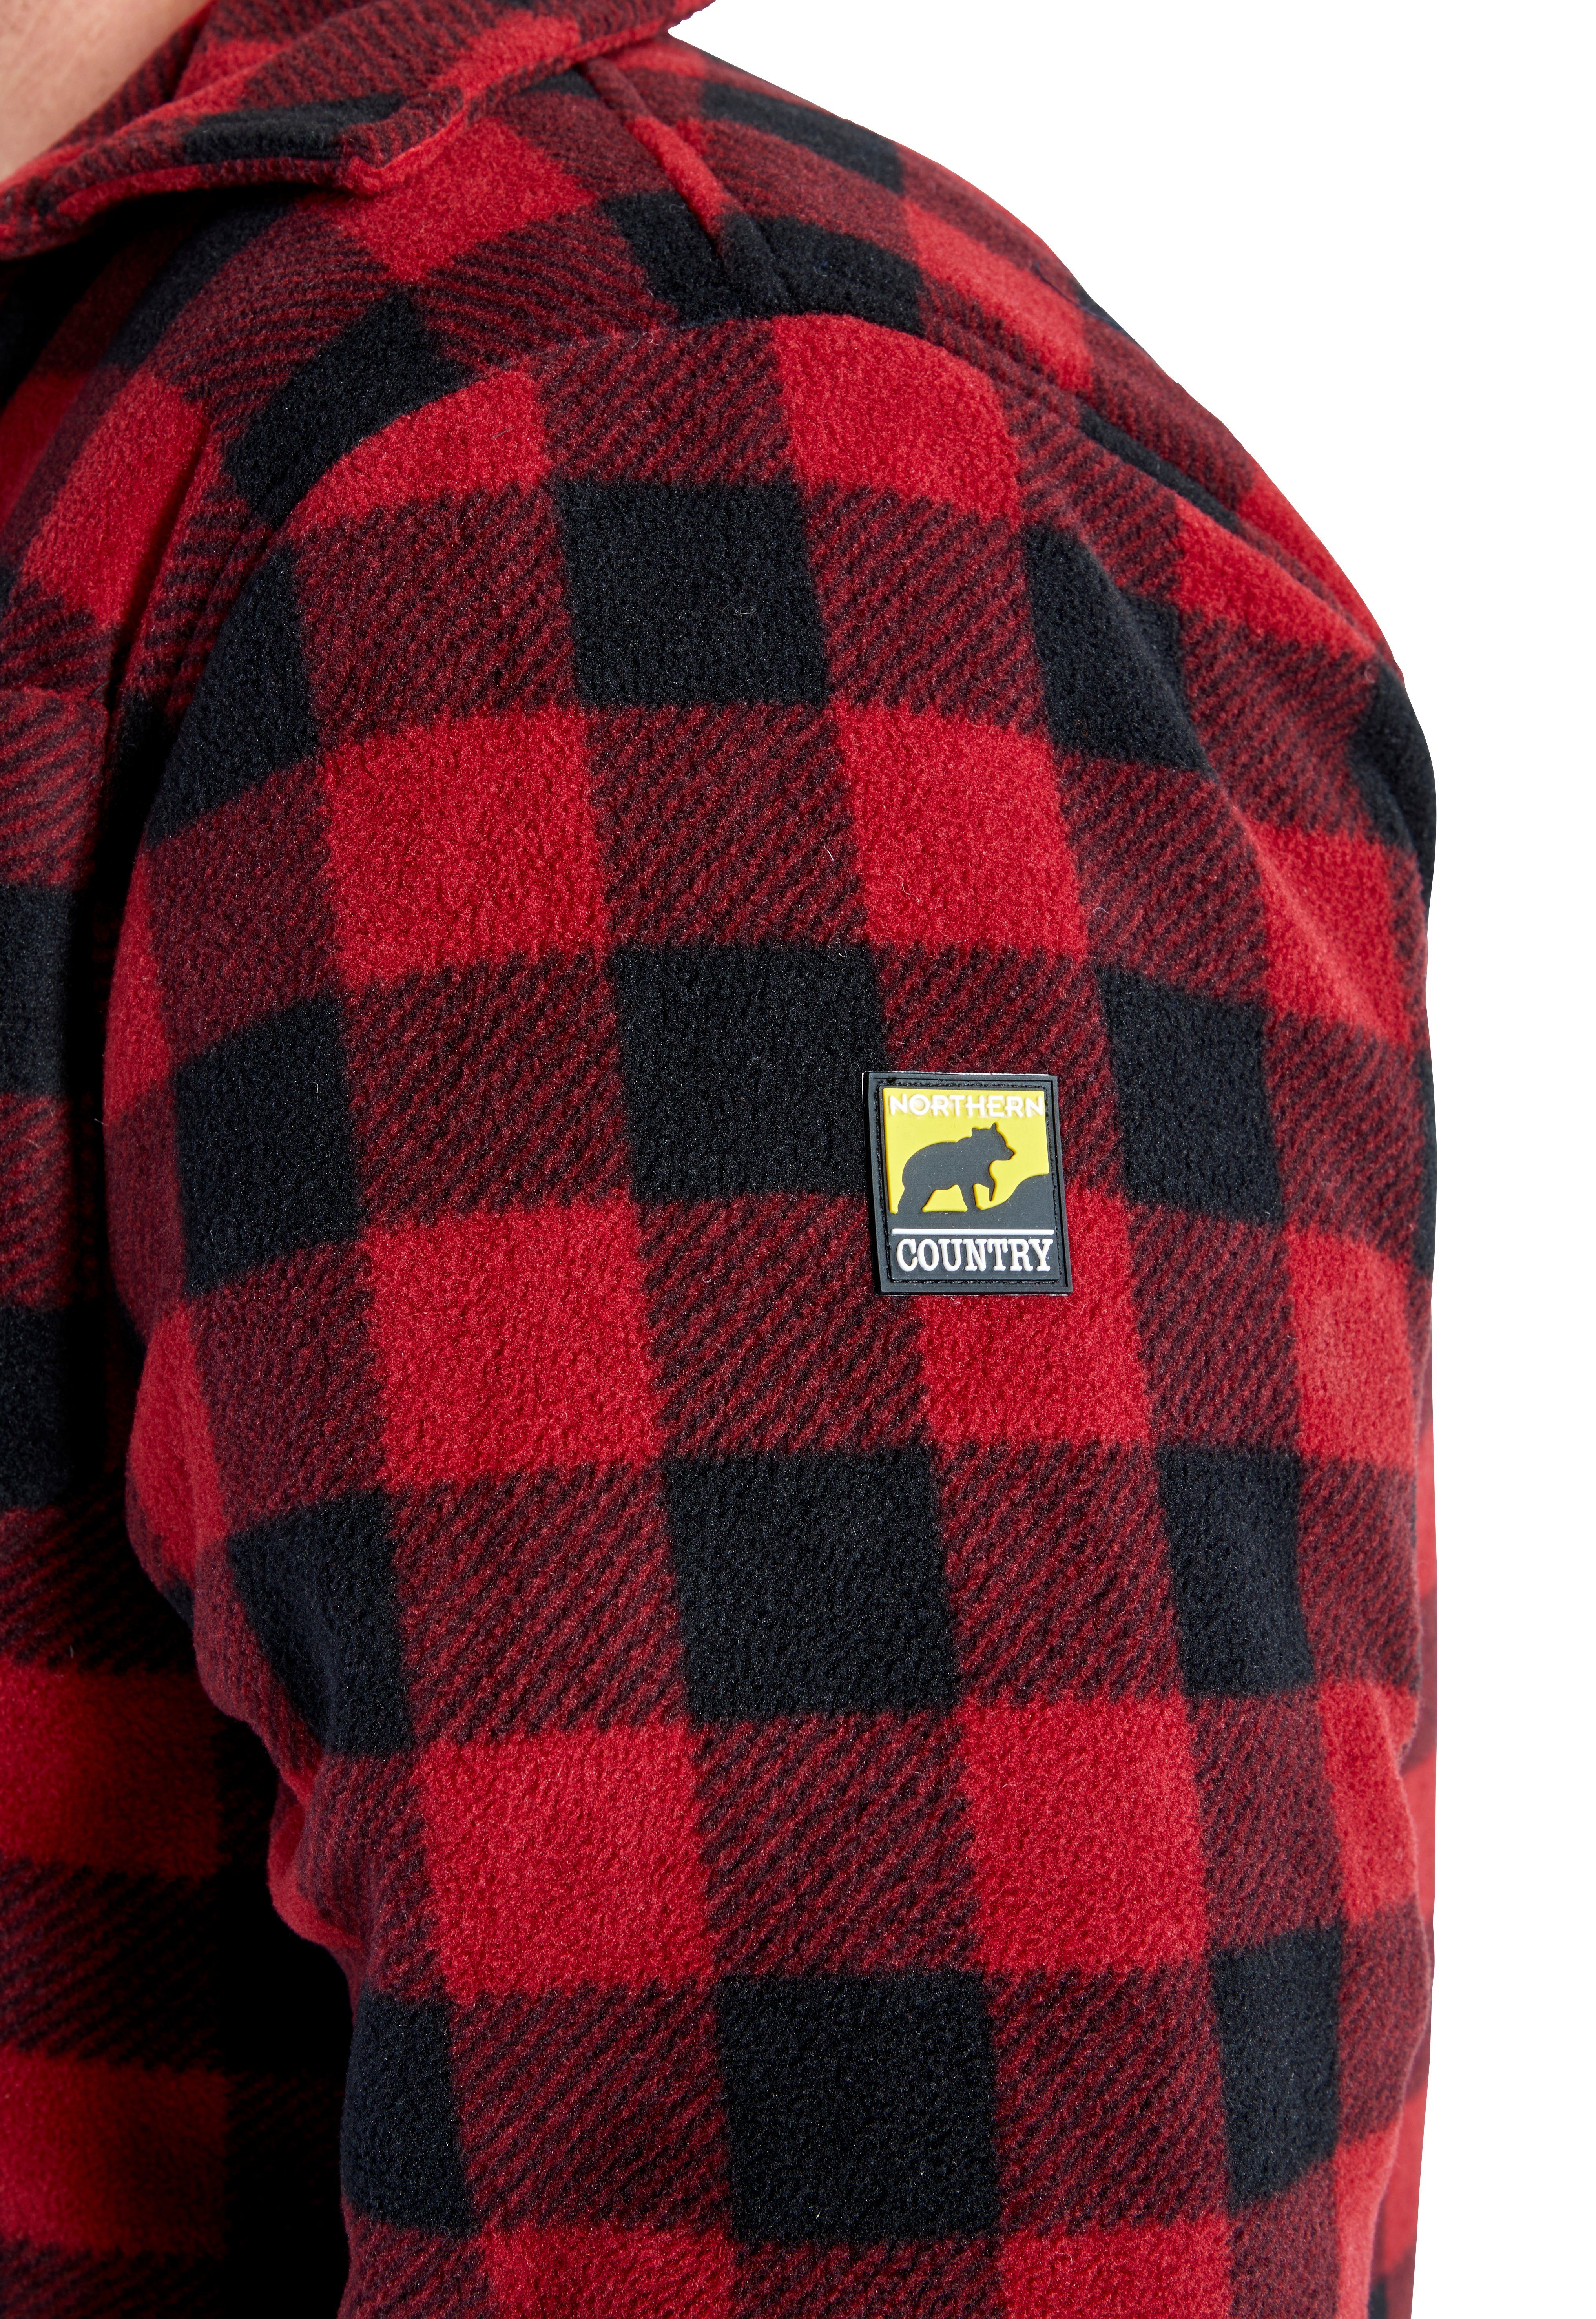 Northern Country Flanellhemd offen zugeknöpft Rücken, mit Flanellstoff gefüttert, warm (als oder tragen) 5 zu mit verlängertem Hemd Taschen, rot-schwarz Jacke